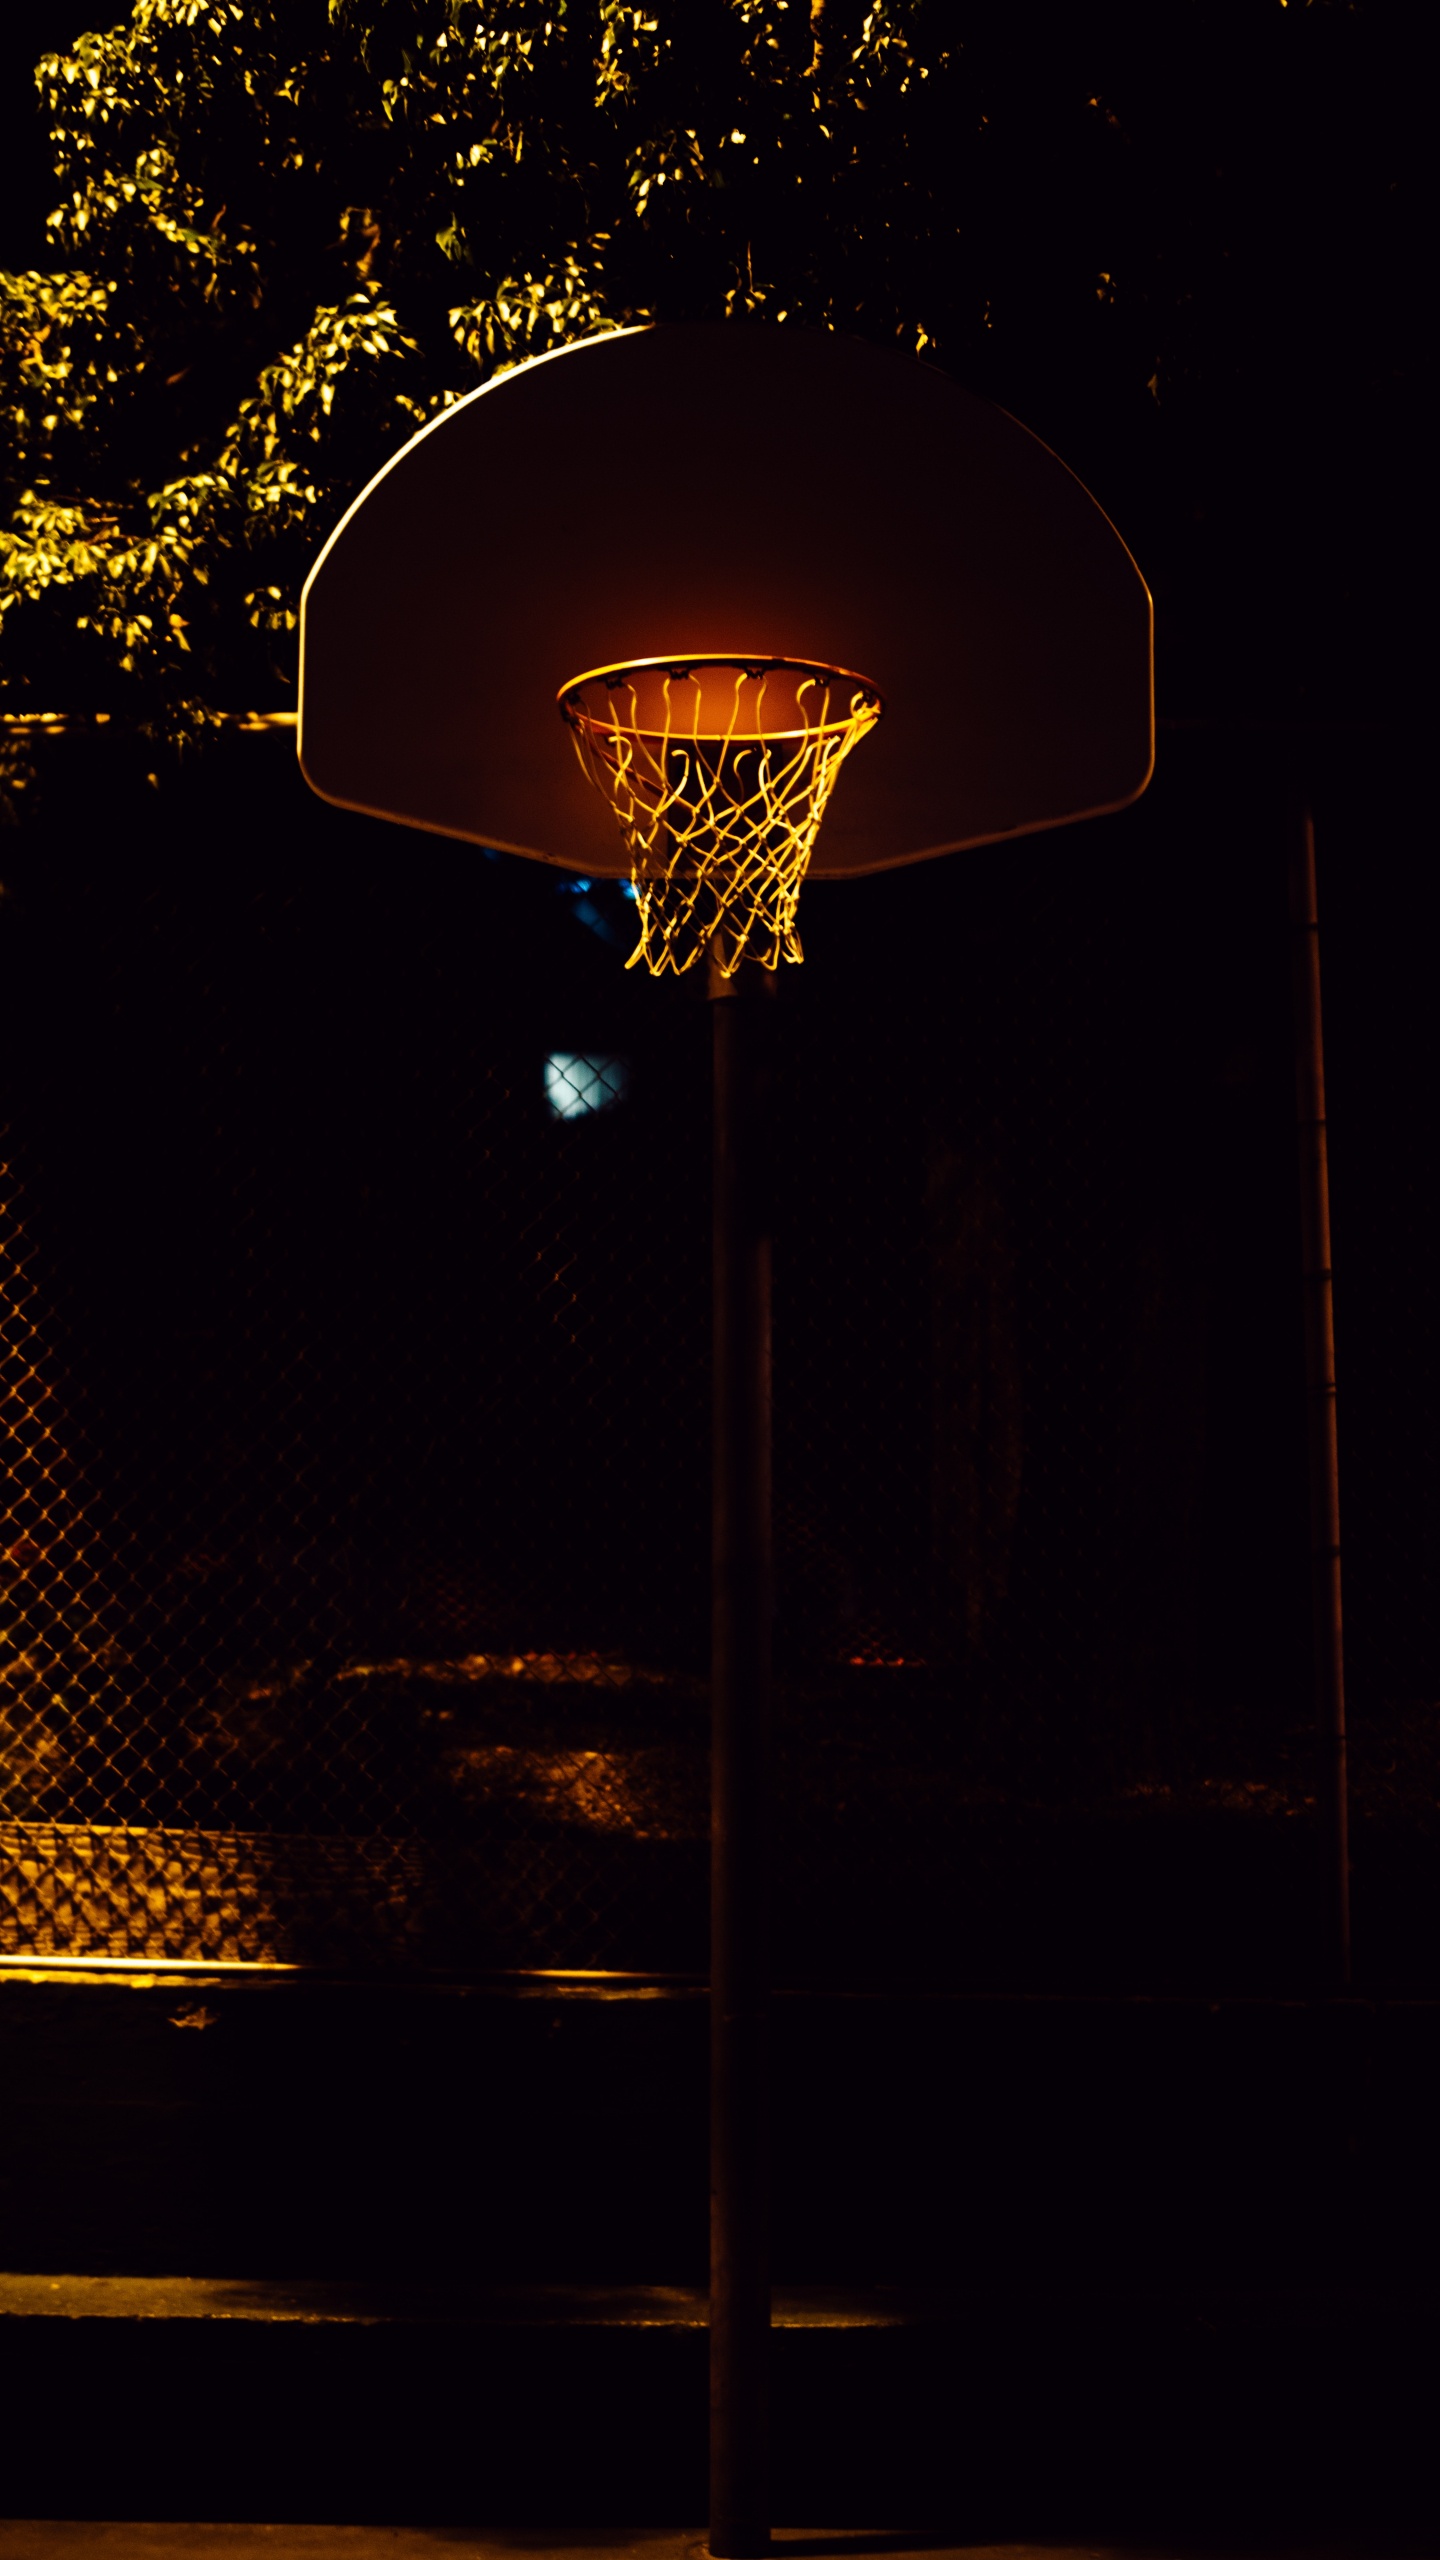 Panier de Basket Avec Lumière Allumée Pendant la Nuit. Wallpaper in 1440x2560 Resolution